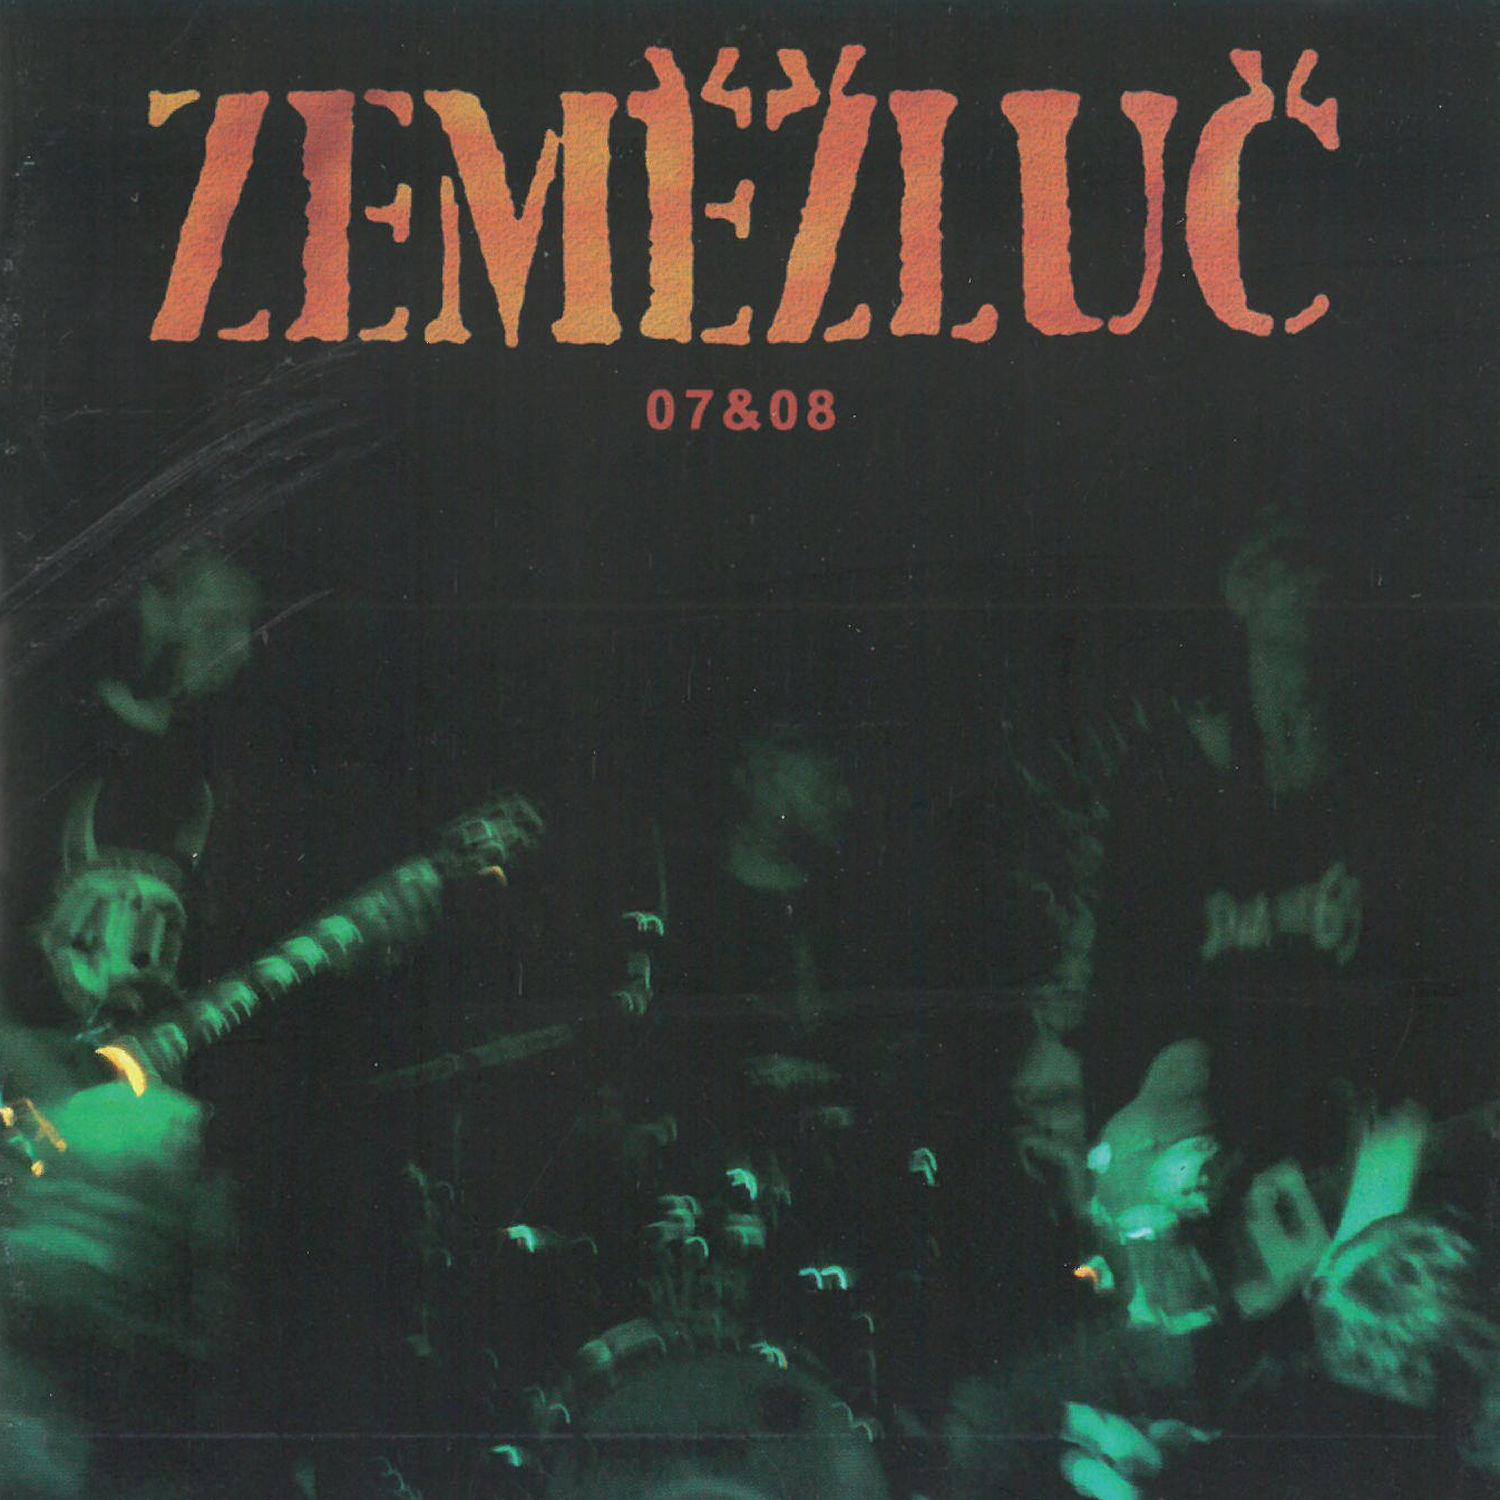 CD Shop - ZEMEZLUC 07&08